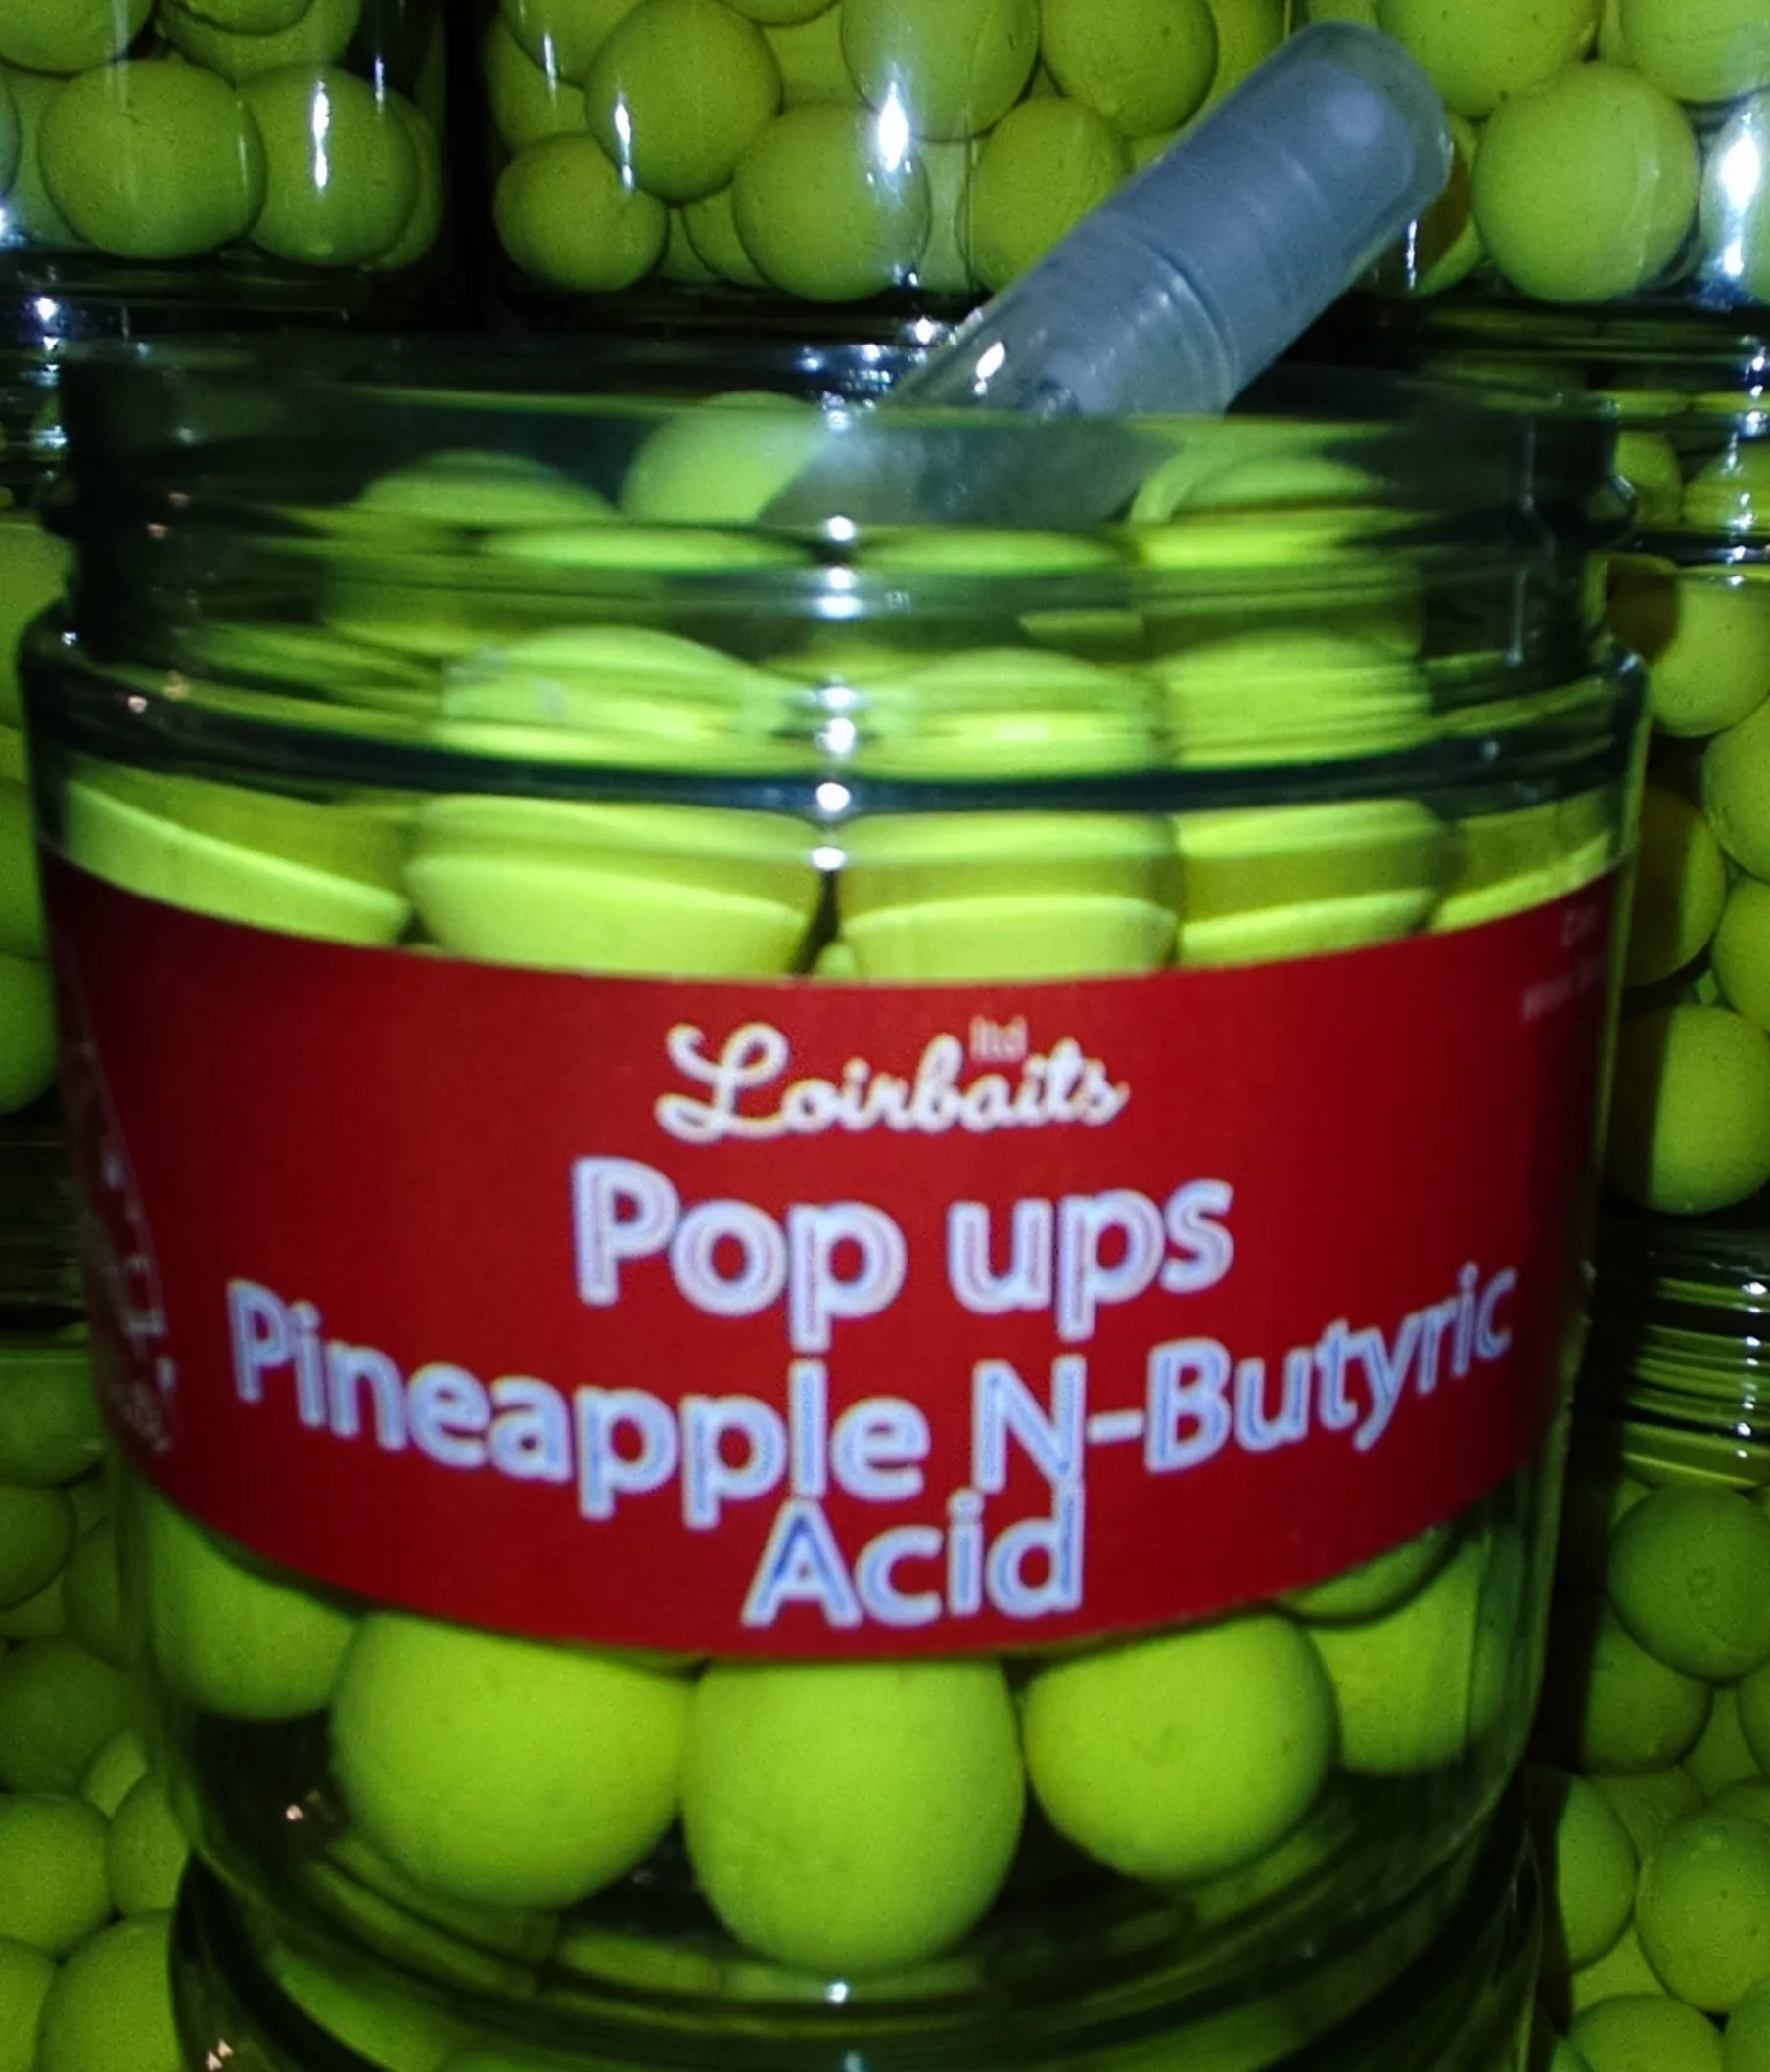 Pop-up Pineapple n'butyric